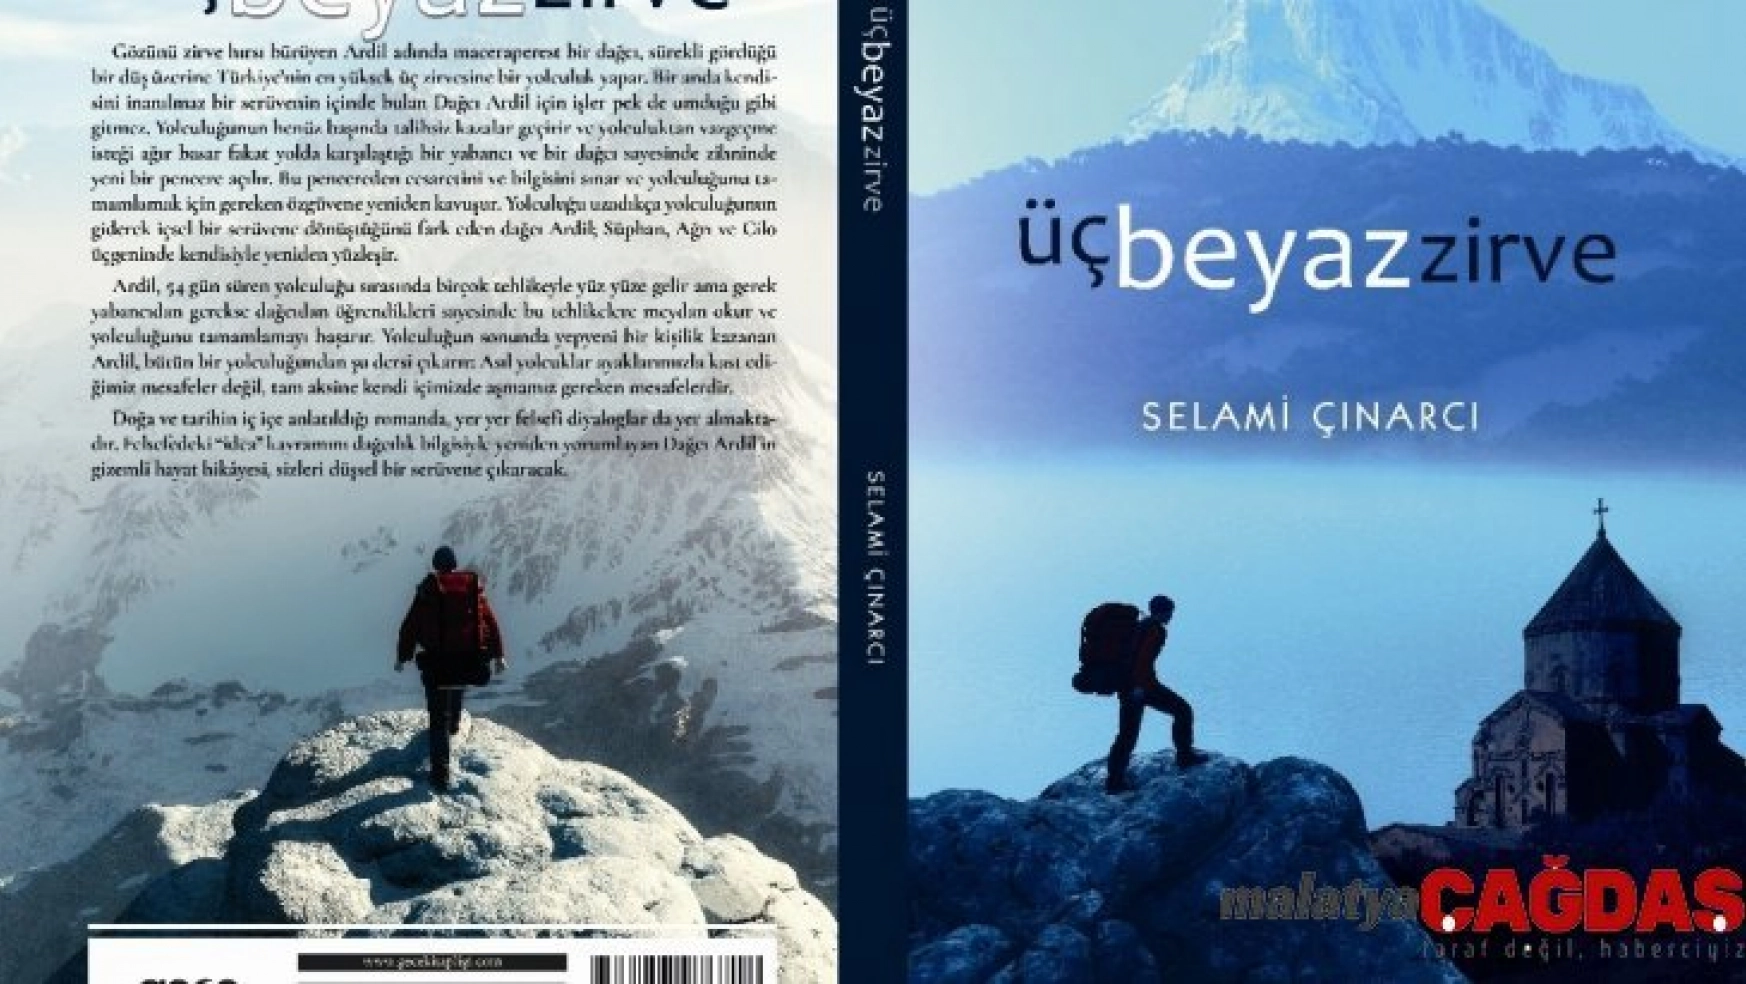 Vanlı Selami Çınarcı'nın 'Üç Beyaz Zirve' romanı çıktı